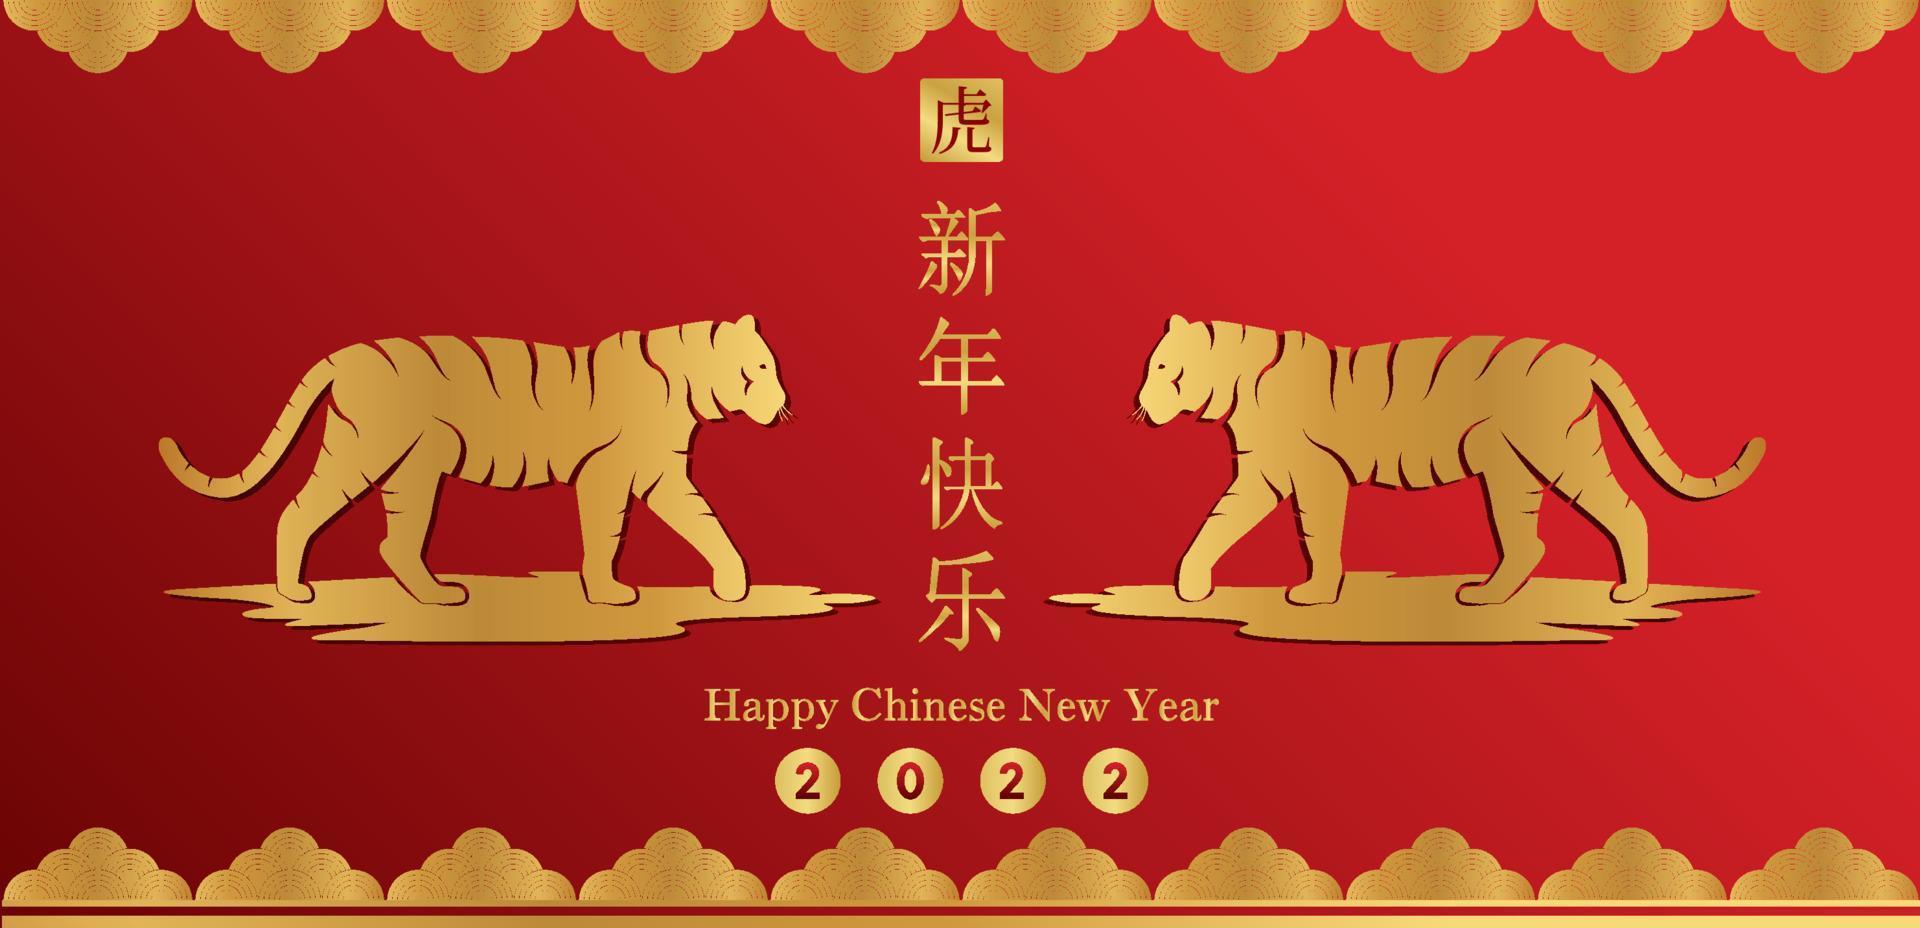 gelukkig chinees nieuwjaar 2022, tijger sterrenbeeld op rode kleur achtergrond. Aziatische elementen met ambachtelijke tijgerpapier gesneden stijl. chinese vertaling gelukkig nieuwjaar 2022, jaar van de tijger vector eps10.